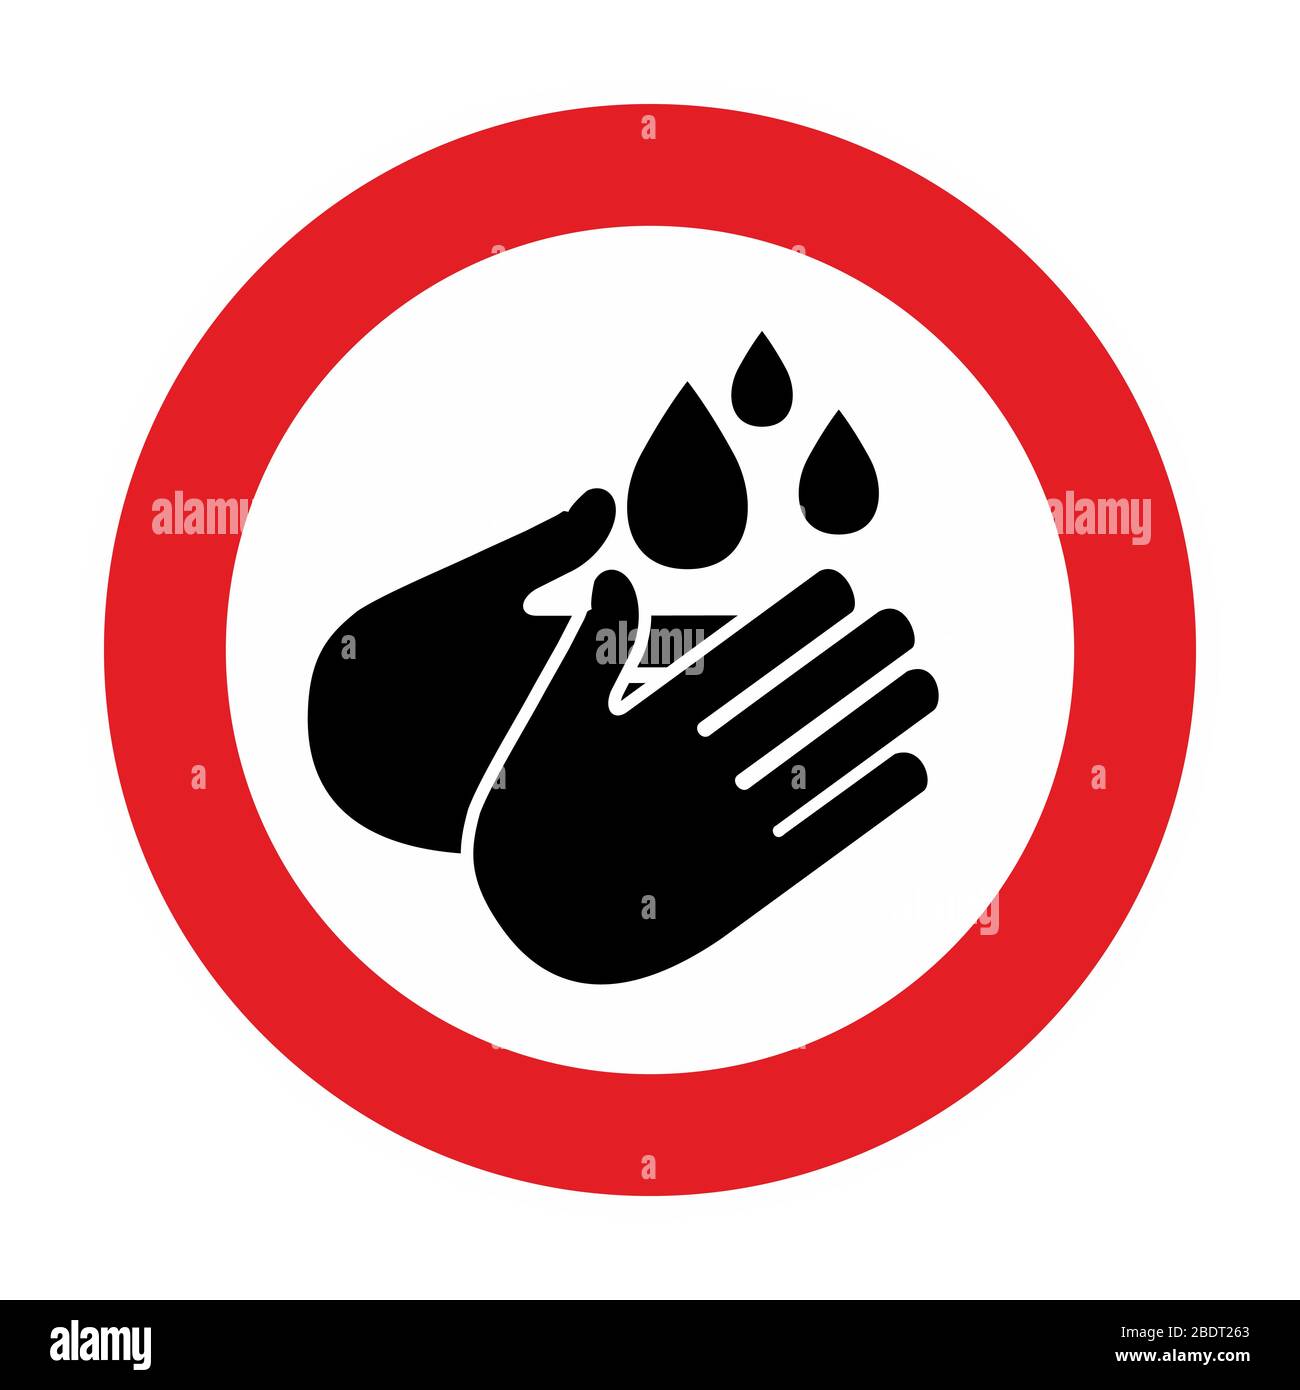 Warnungs- und Quarantänezeichen waschen die Hände. Lockdown Pandemie stoppt Coronavirus Ausbruch kovid 19 2019-nCoV. Fahren Sie mit dem Symbol für den Vektor-Schutz der Mundkappe Stock Vektor